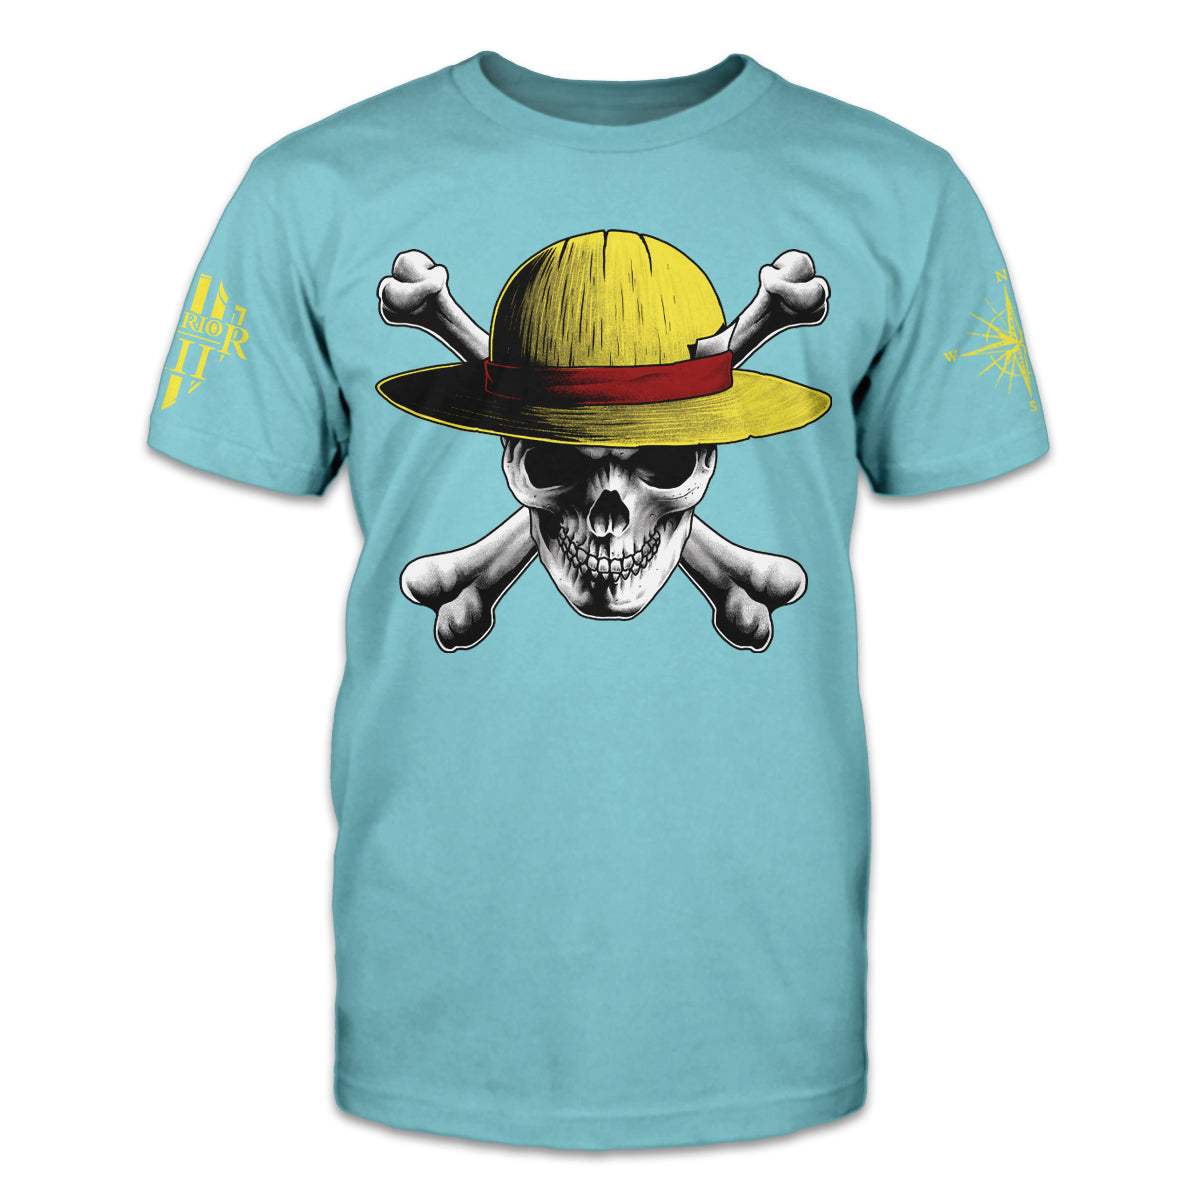 Raise the Jolly Roger!' Men's T-Shirt